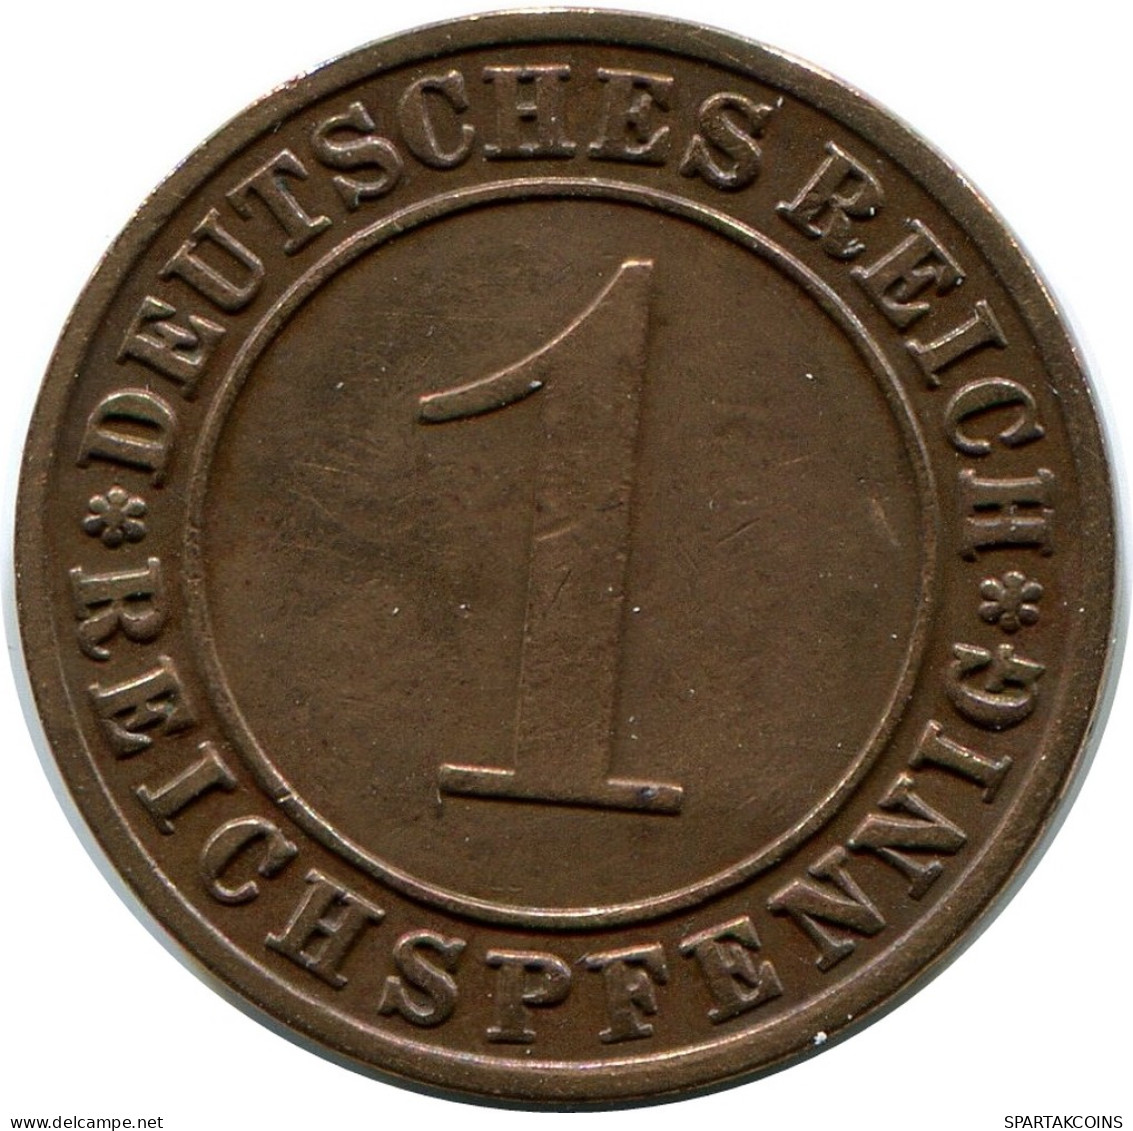 1 REICHSPFENNIG 1928 G ALEMANIA Moneda GERMANY #DB782.E - 1 Rentenpfennig & 1 Reichspfennig